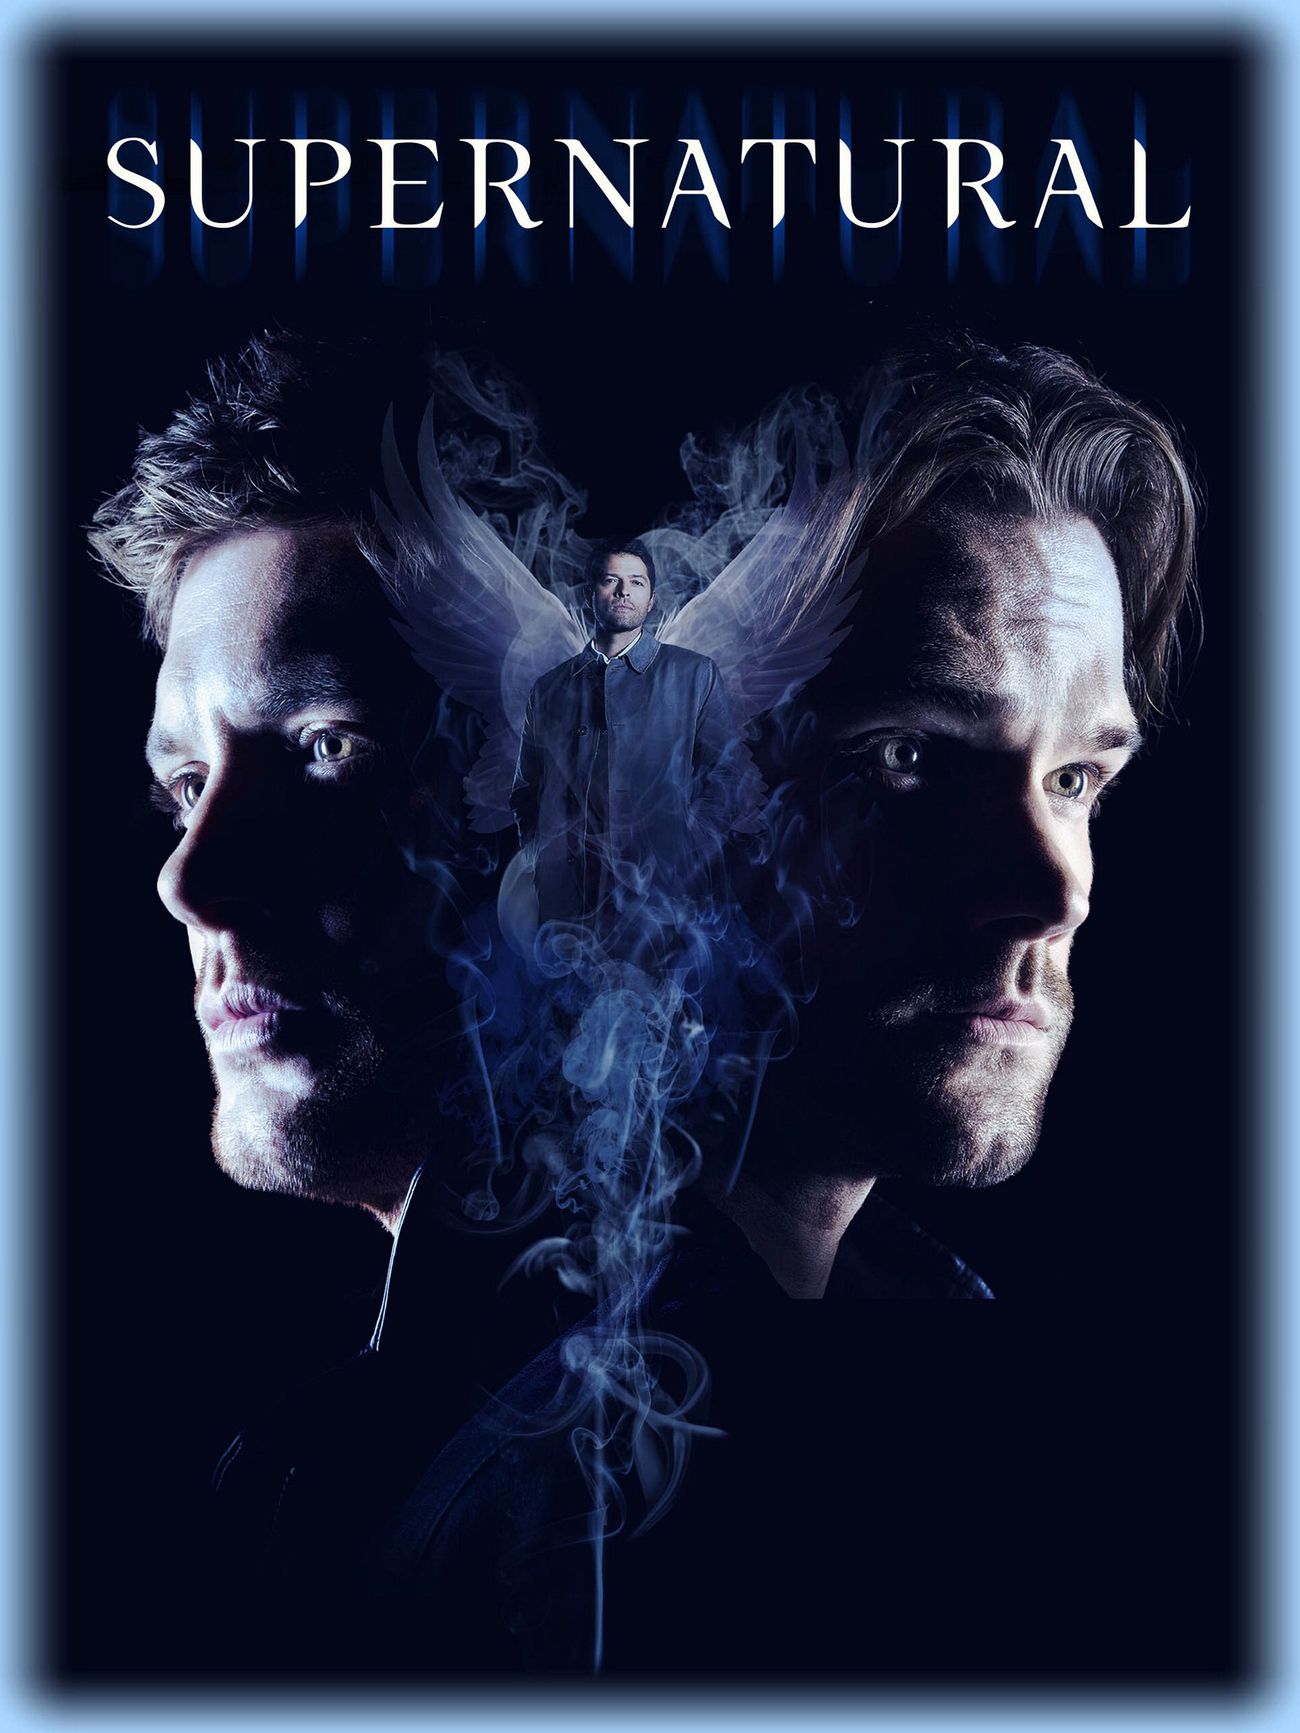 Supernatural S14 Cast Poster. Supernatural picture, Supernatural seasons, Supernatural wallpaper